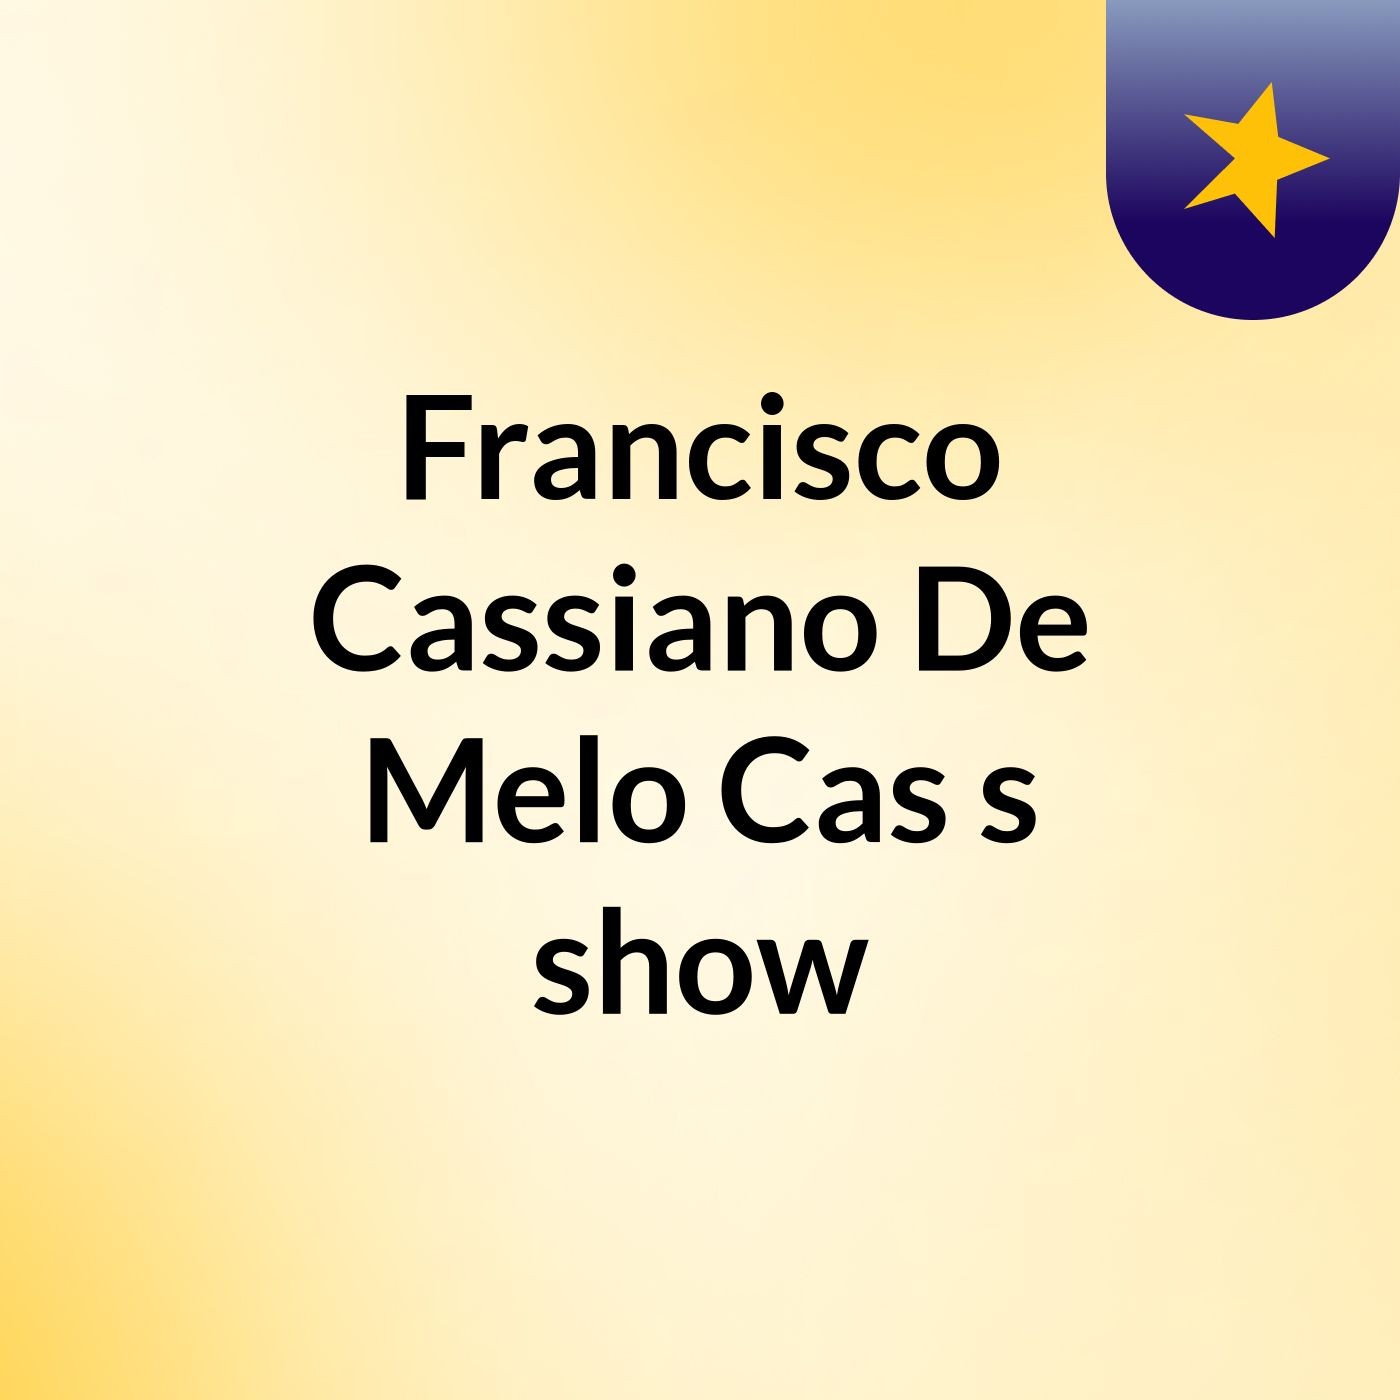 Francisco Cassiano De Melo Cas's show